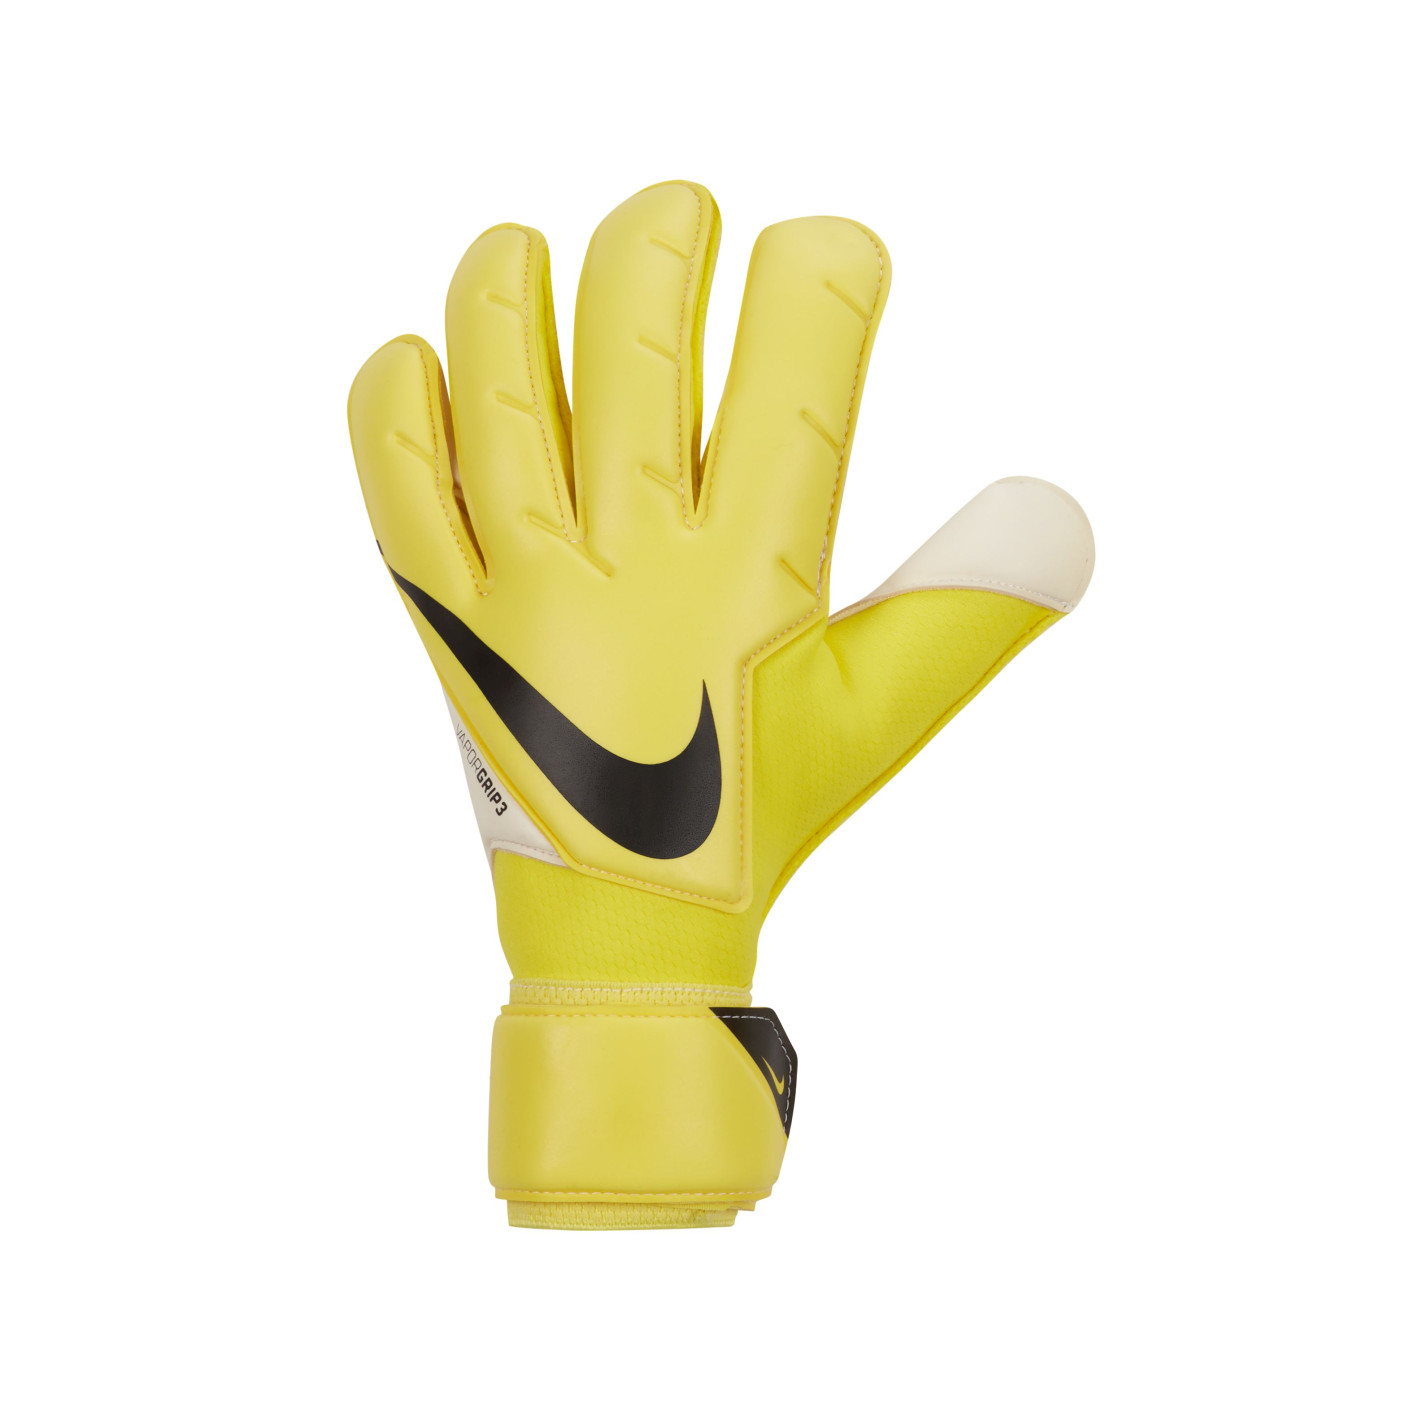 Nike Vapor Grip 3 Keepershandschoenen Geel Wit Zwart